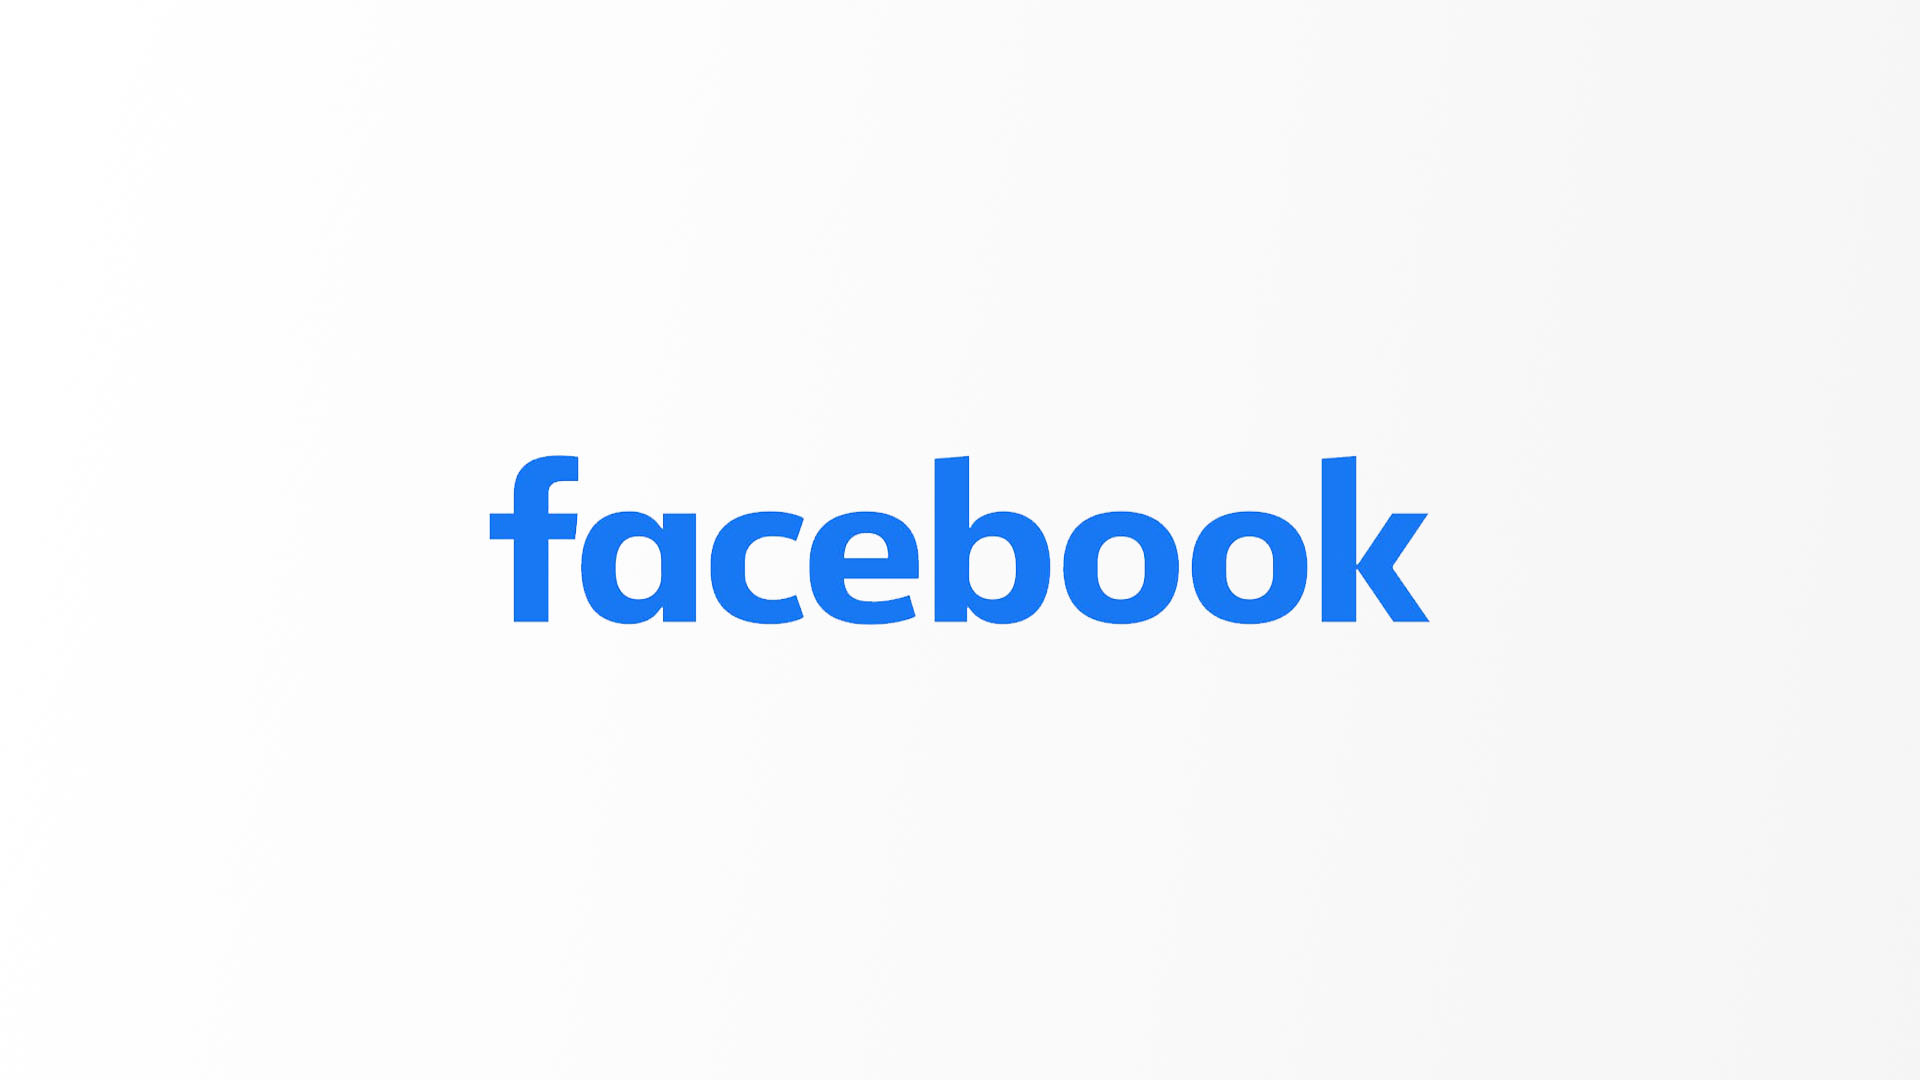 Facebook belépés: Bejelentkezés a Facebookra (Ingyenes magyar útmutató)